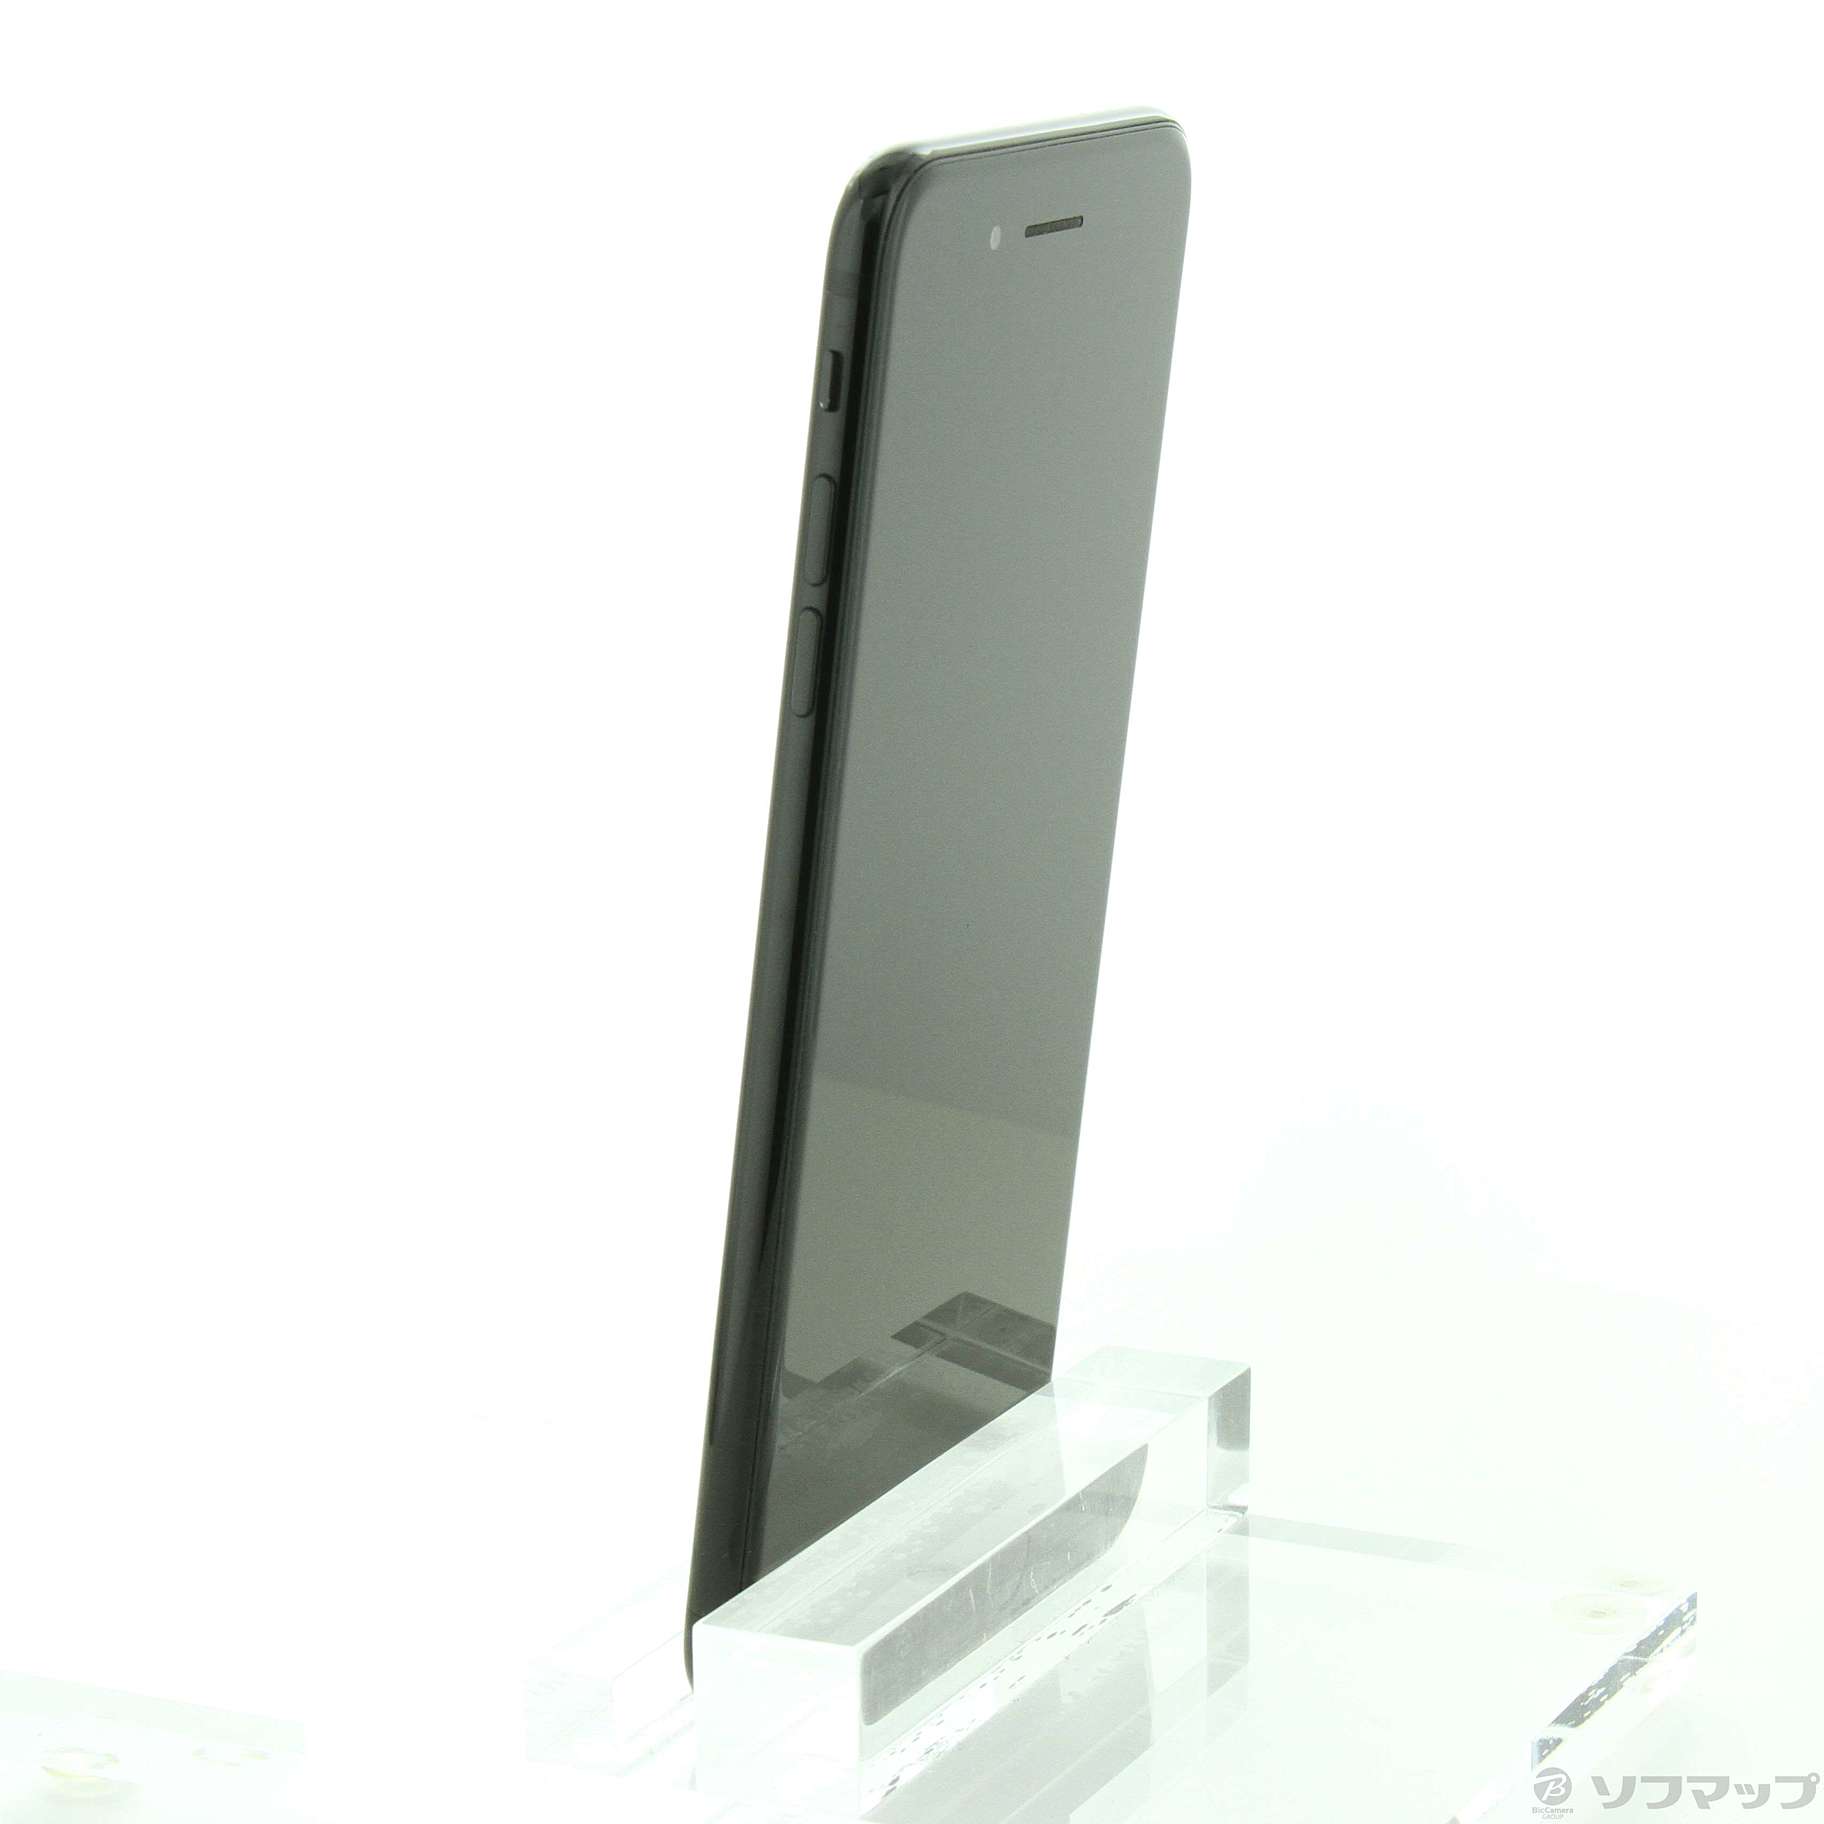 品質極上BS016 SIMフリー iPhone7Plus ジェットブラック 128GB ジャンク ロックOFF iPhone